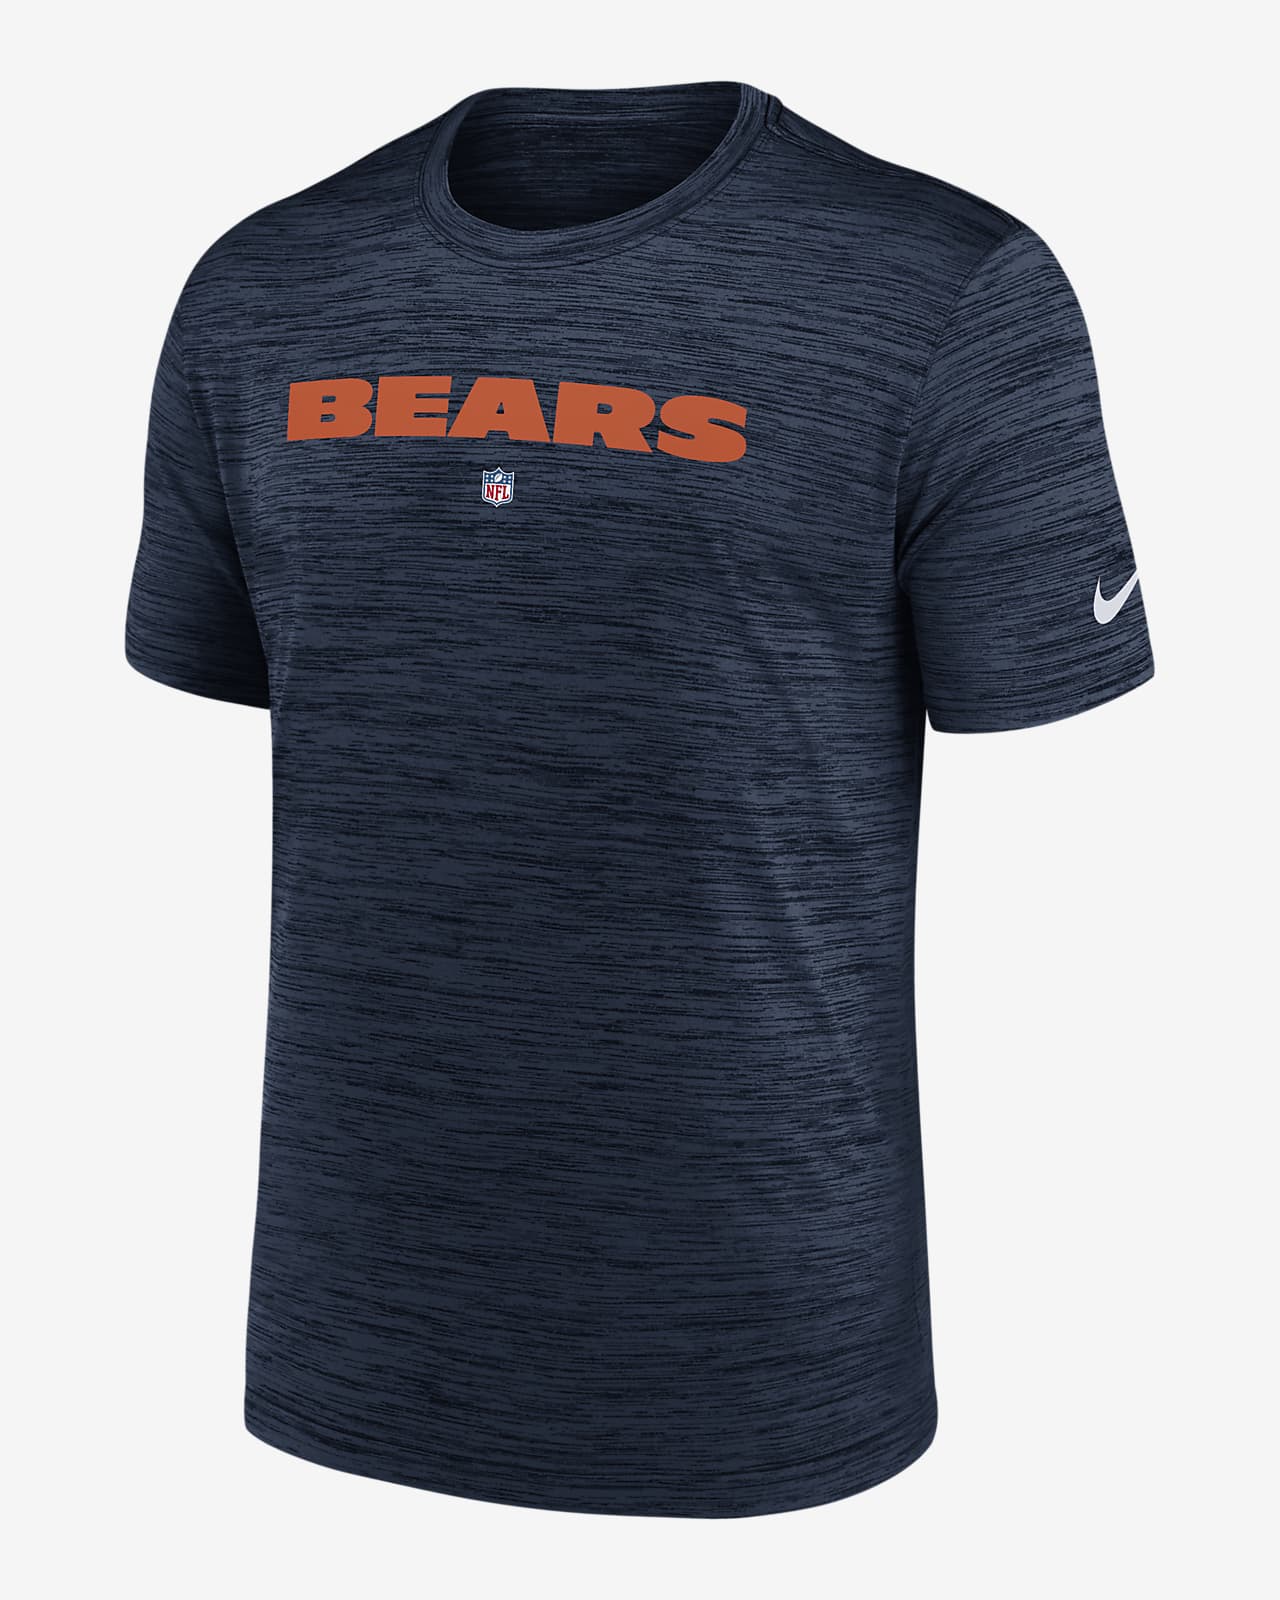 Nike Dri-FIT Sideline Velocity (NFL Chicago Bears) Men's T-Shirt